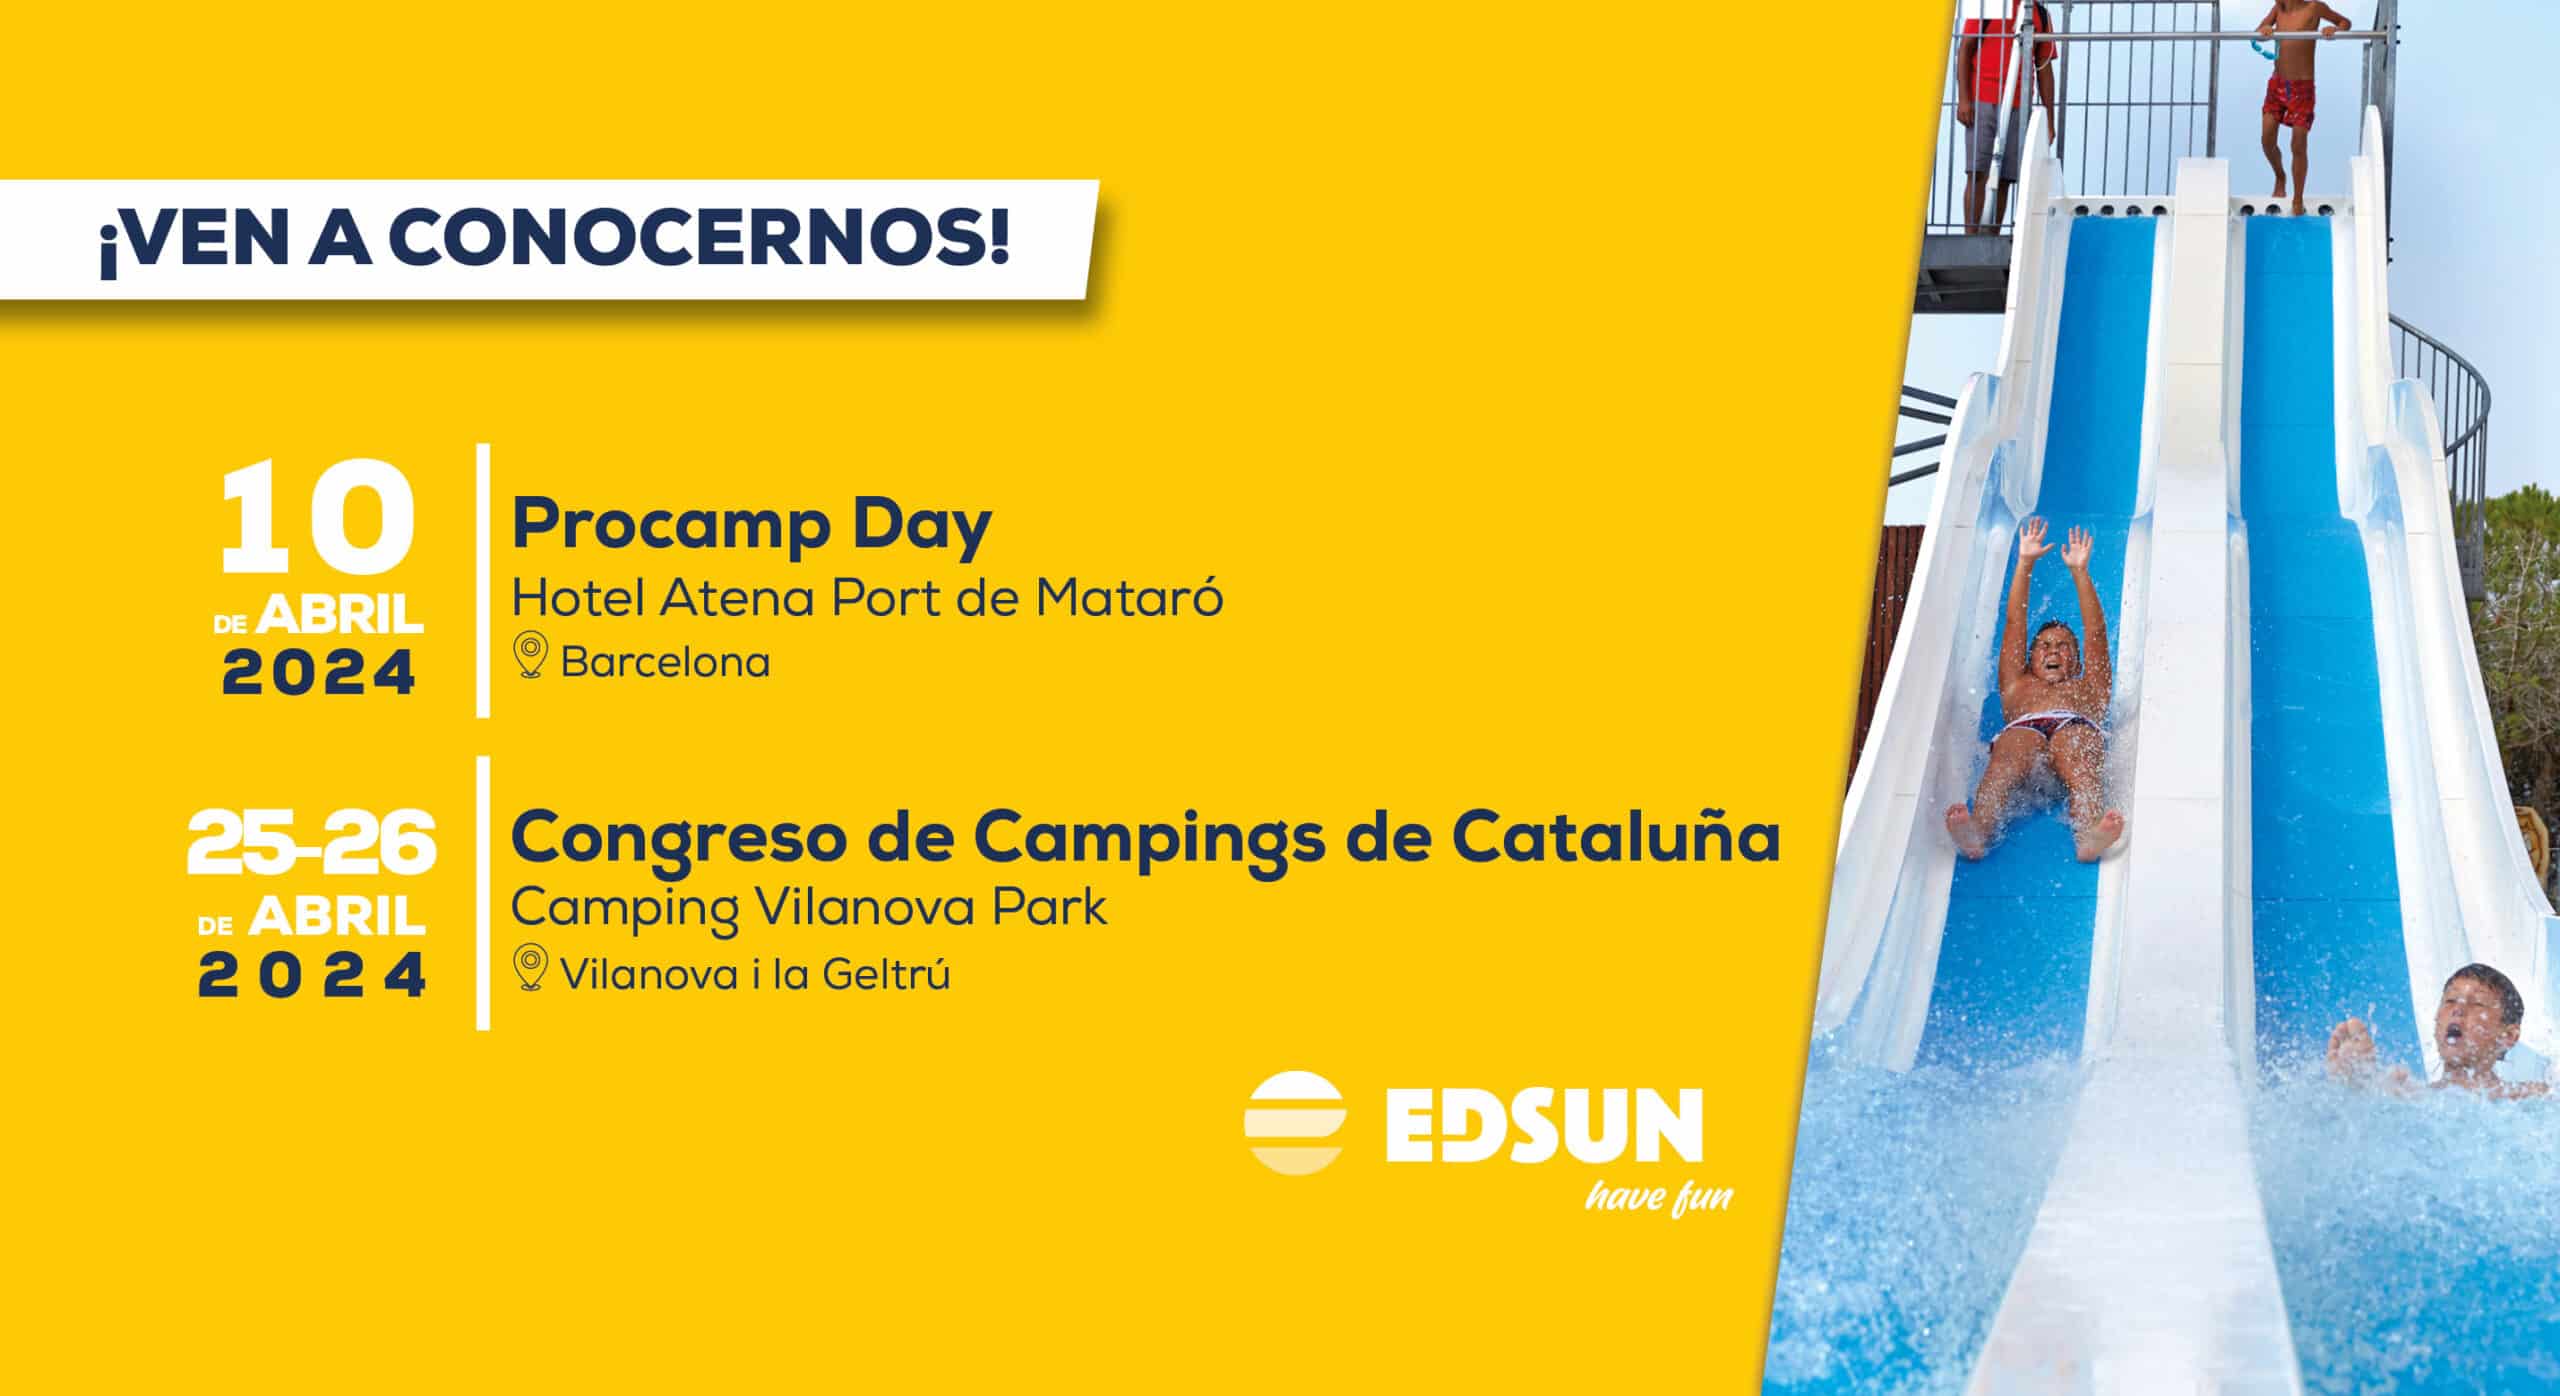 Espana Procamp Day y Congreso de Campings de Cataluna